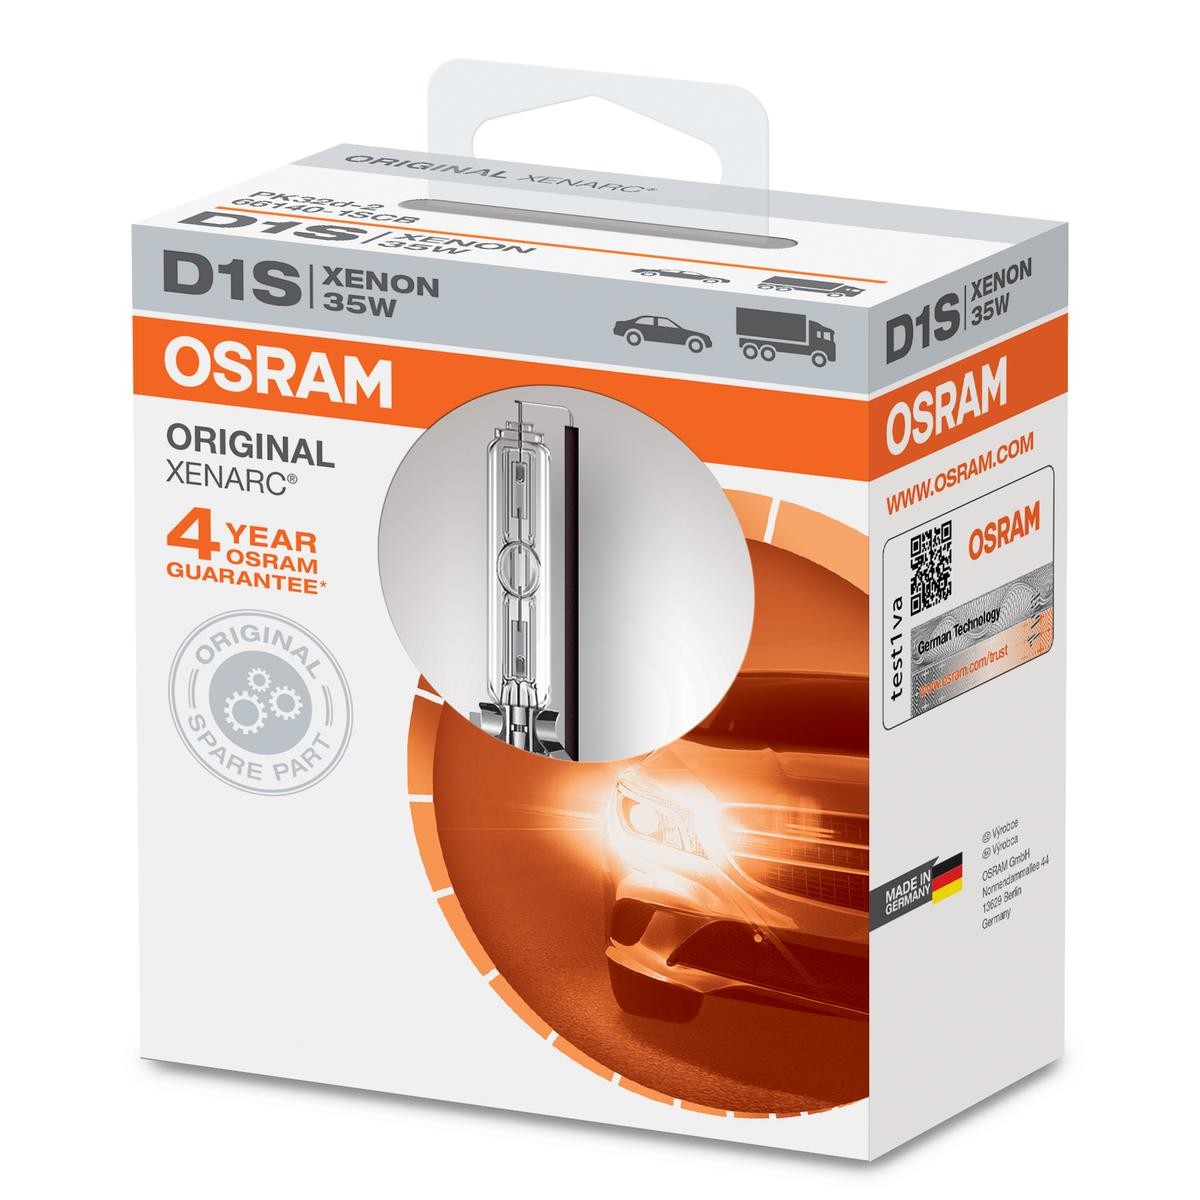 D1S OSRAM XENARC ORIGINAL D1S (Gasurladdningslampa) 85V 35W PK32d-2 4300K Xenon Glödlampa, fjärrstrålkastare 66140 köp lågt pris